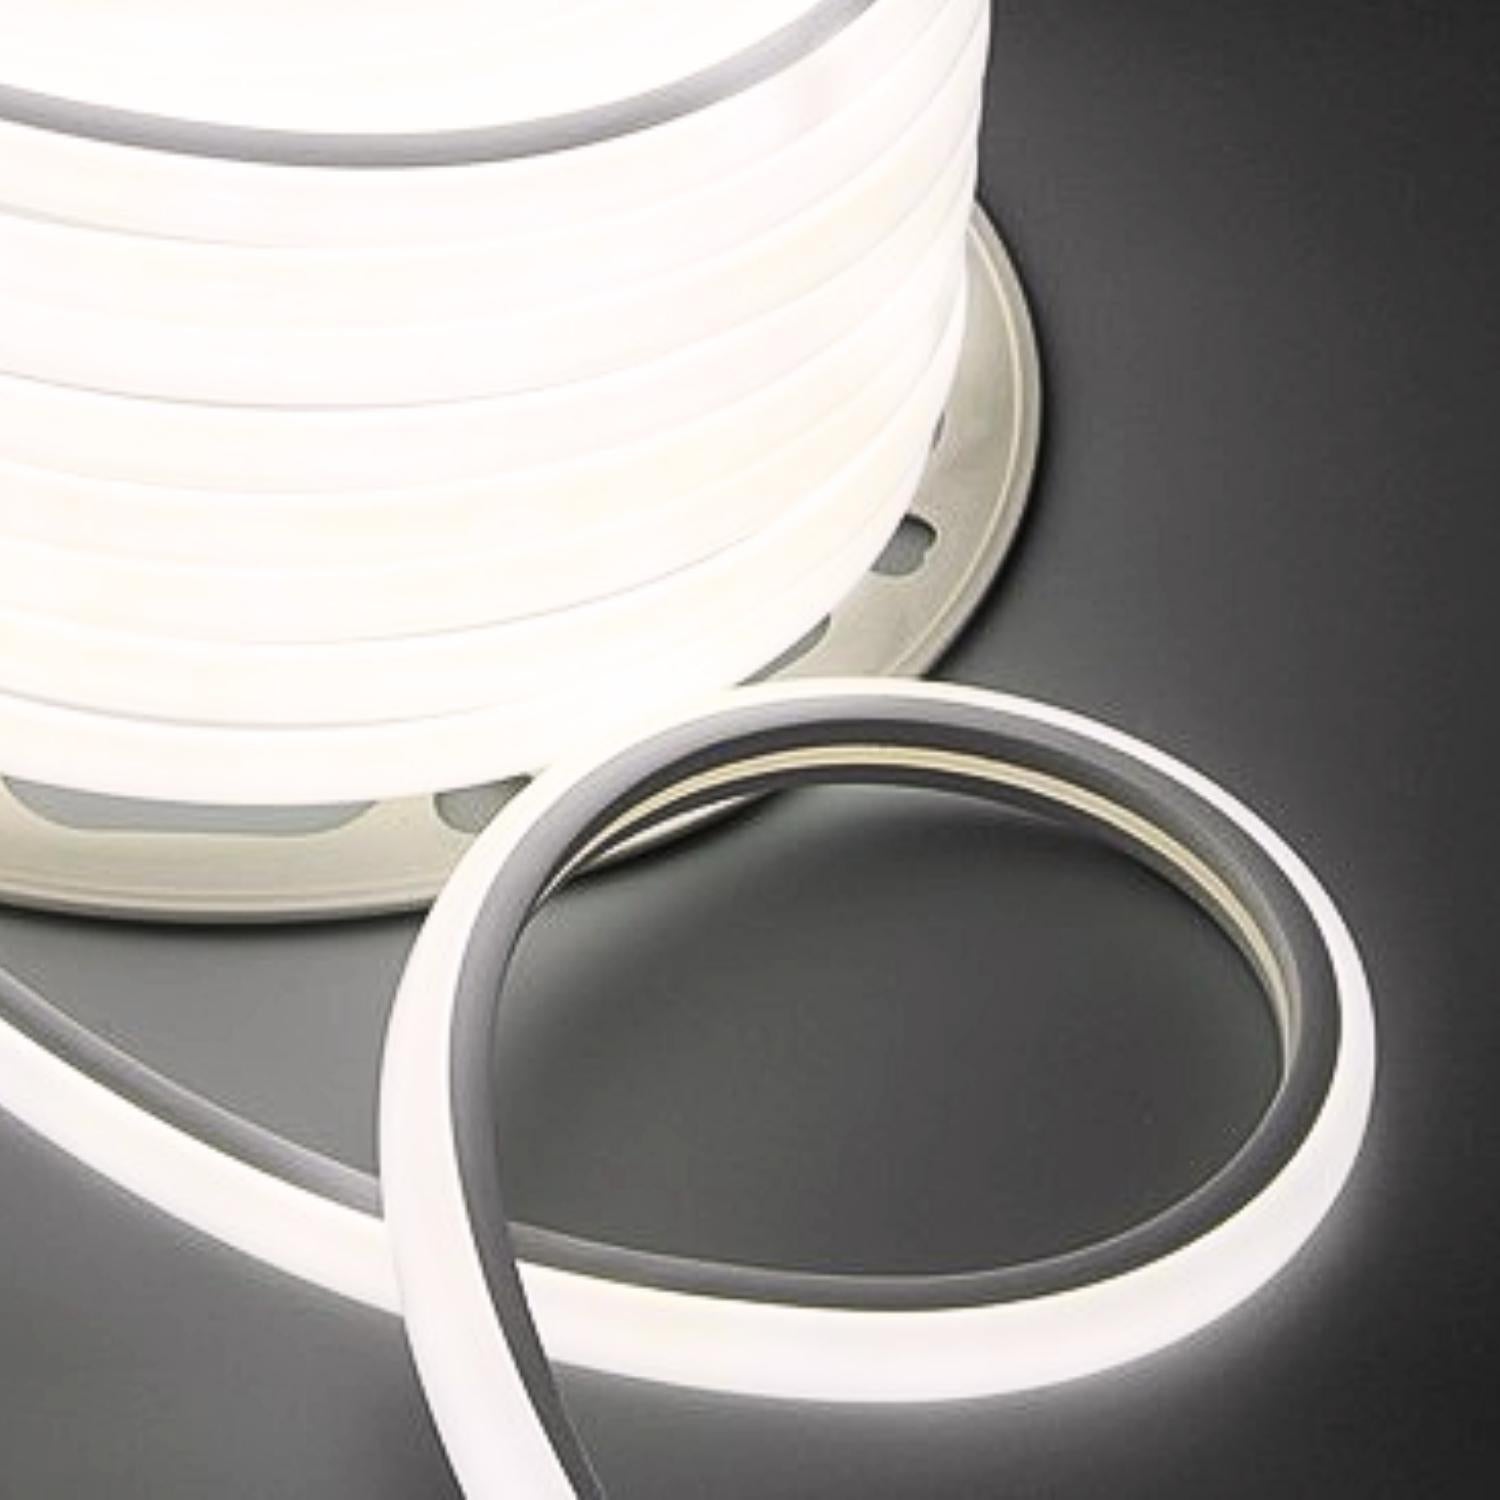 Natural White LED Neon Flex 16x16mm D Shape Vertical Bending 120LEDs/m 220V 240V IP67 Waterproof with UK Plug - ATOM LED